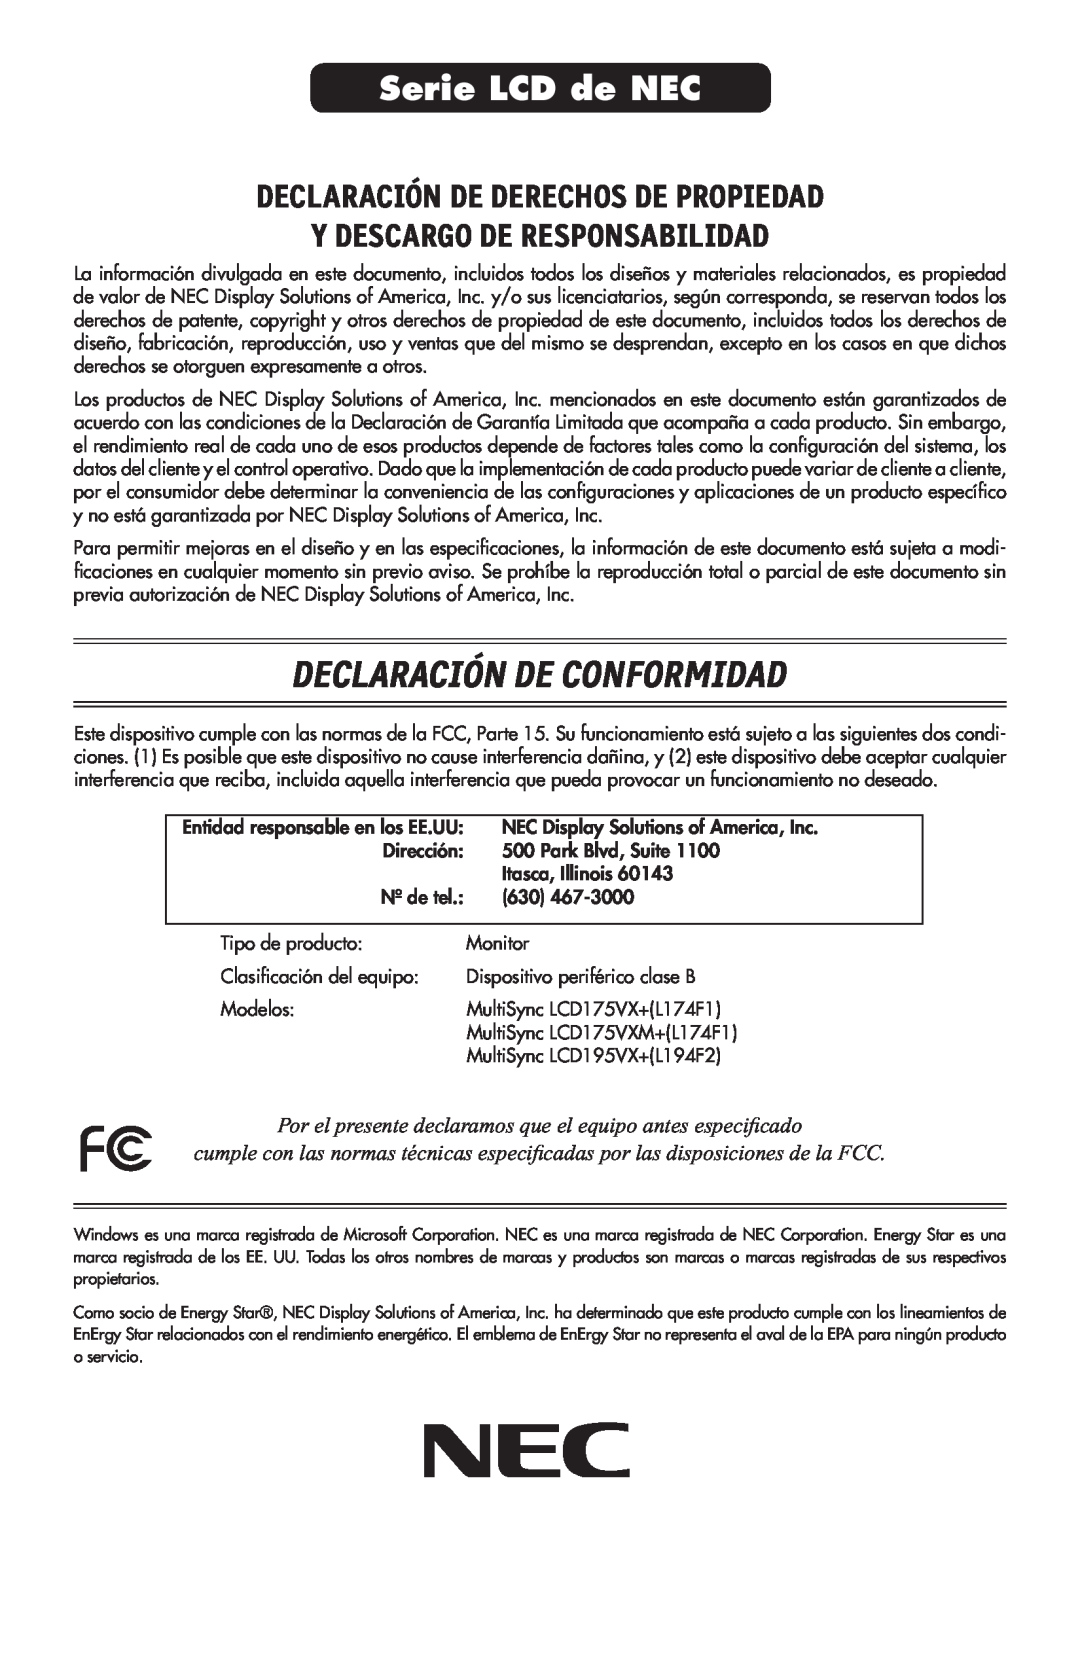 NEC 175VXM user manual Declaración De Conformidad, Serie LCD de NEC, Declaración De Derechos De Propiedad 